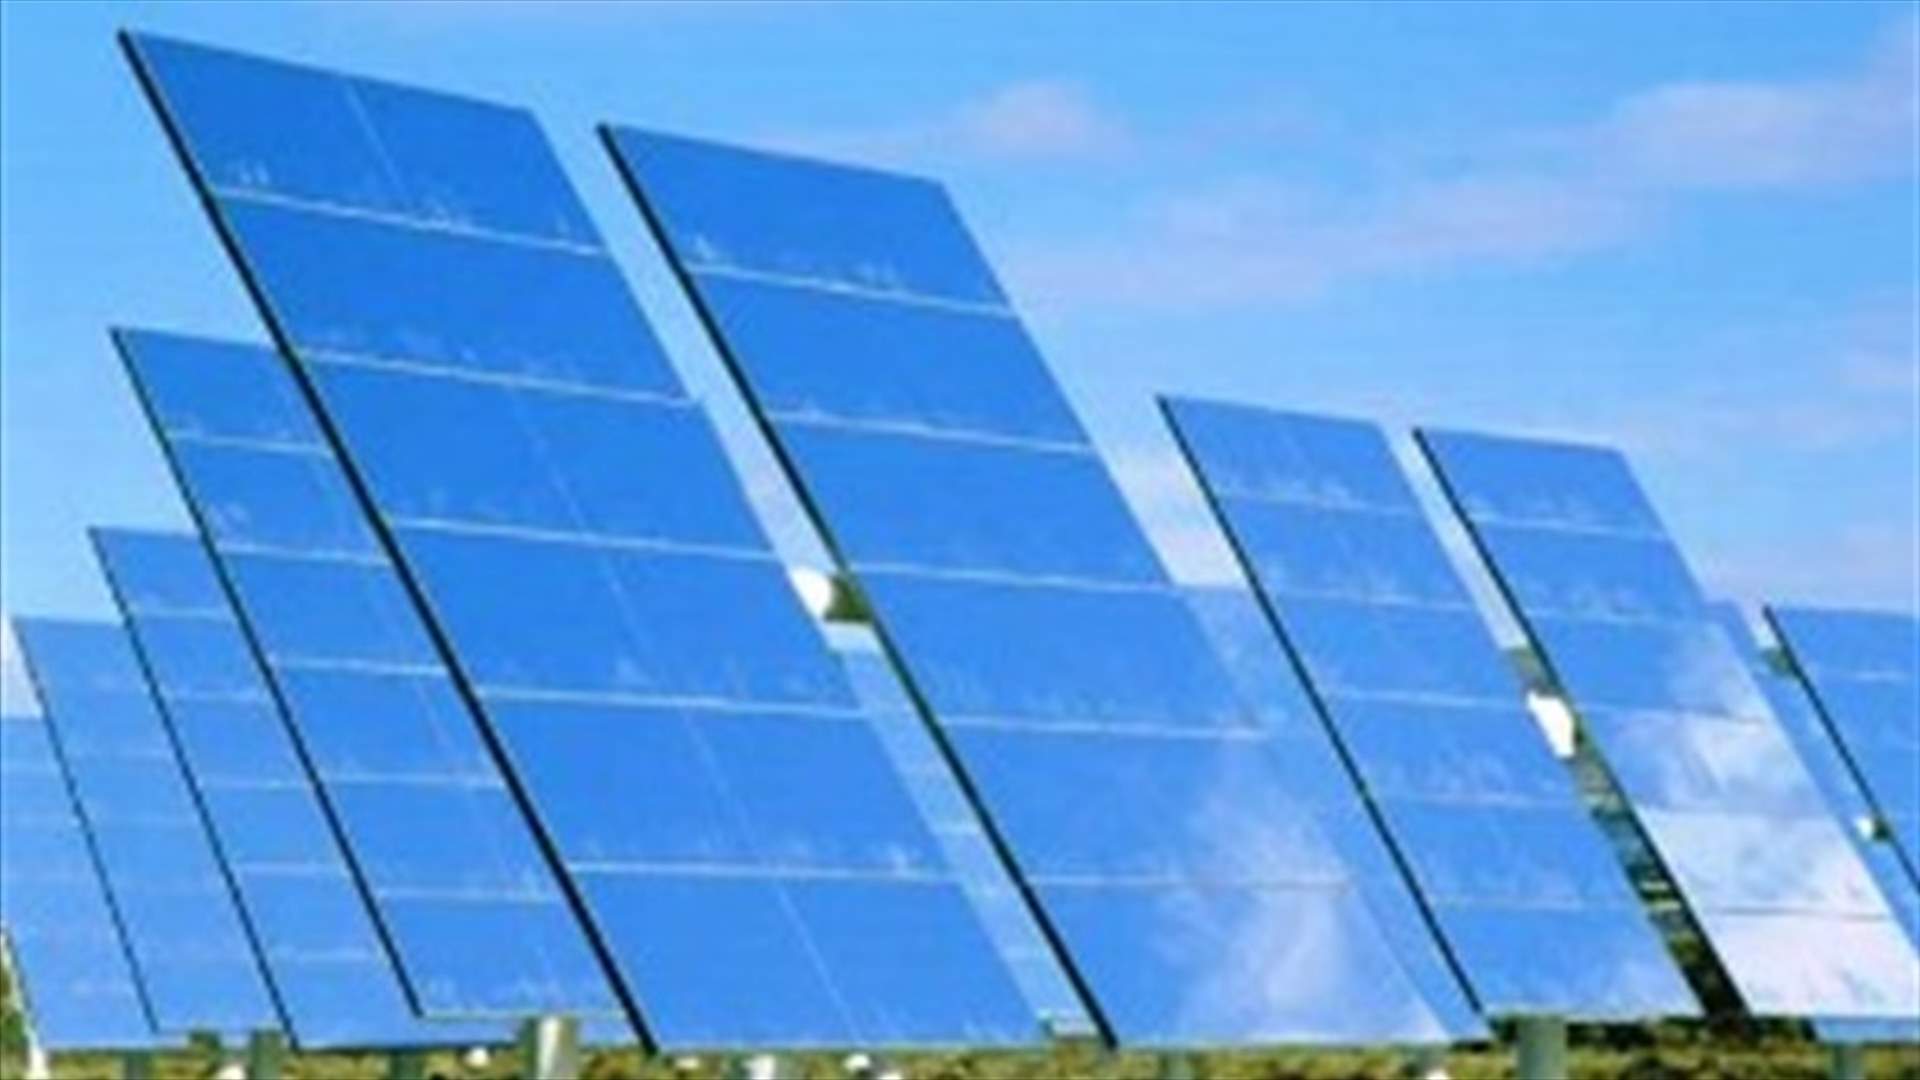 السعودية تعتزم طرح عقد لبناء مشروع طاقة شمسية بقدرة 600 ميغاوات في مكة